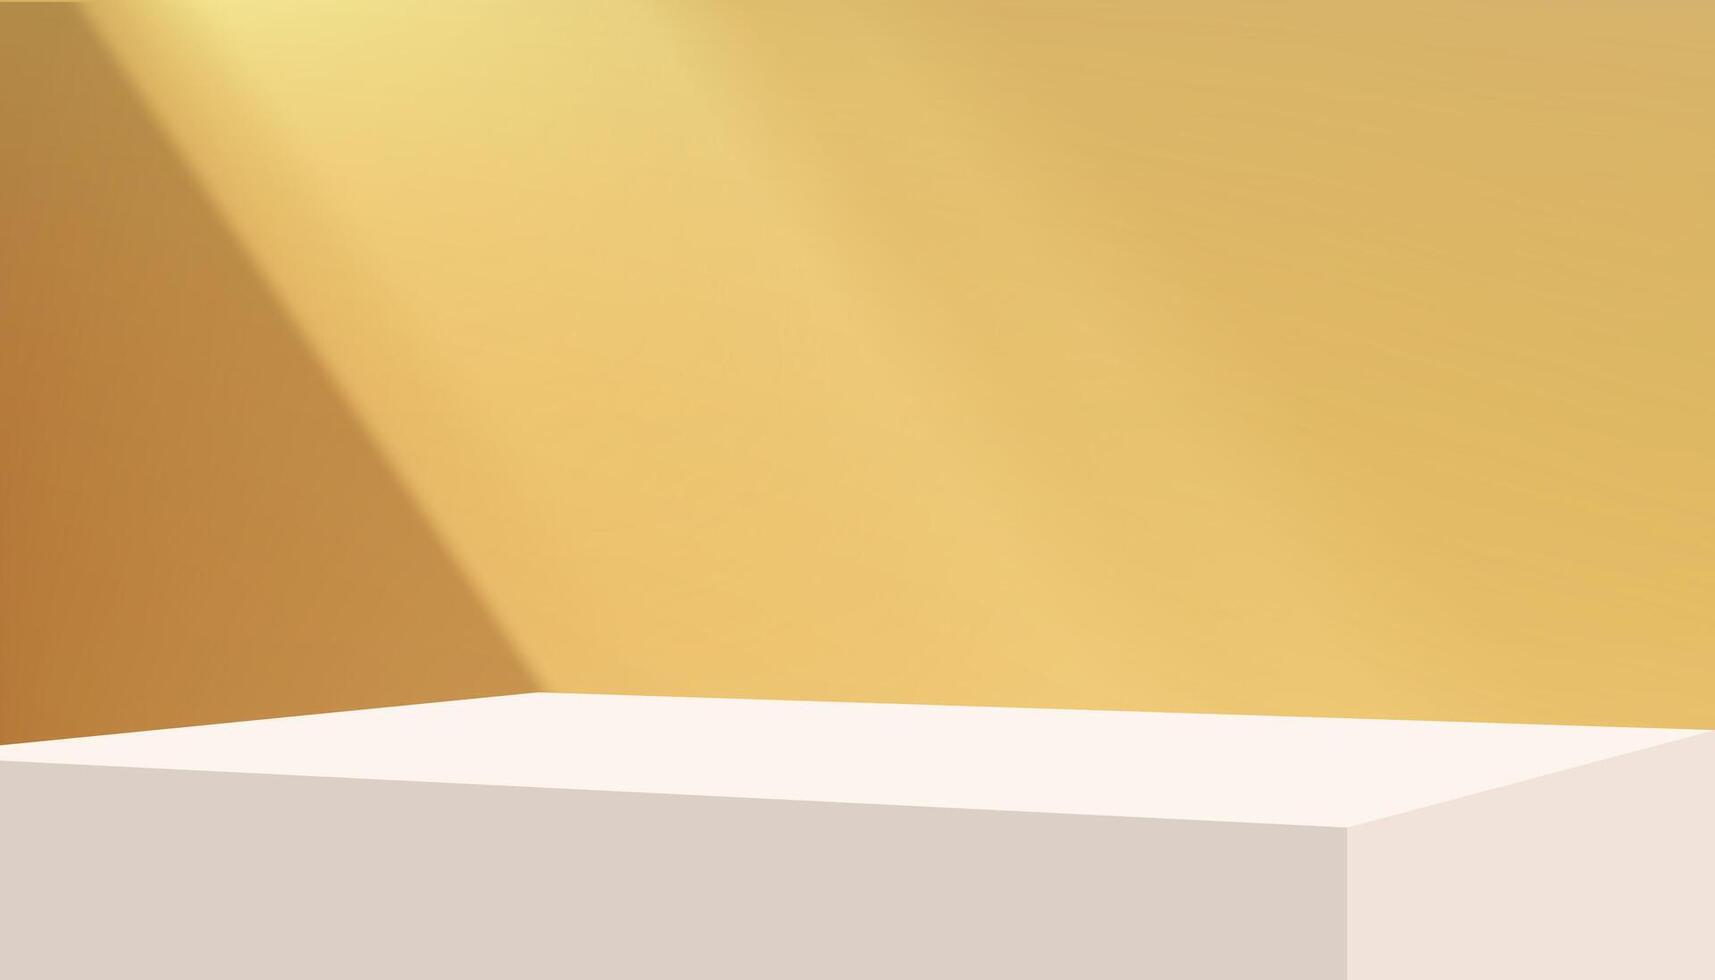 amarelo estúdio fundo concreto parede quarto com sombra clara em pódio exibição para produtos presente, pano de fundo cimento parede com luz solar, uso para Primavera Verão venda on-line, st patrick dia rede bandeira vetor